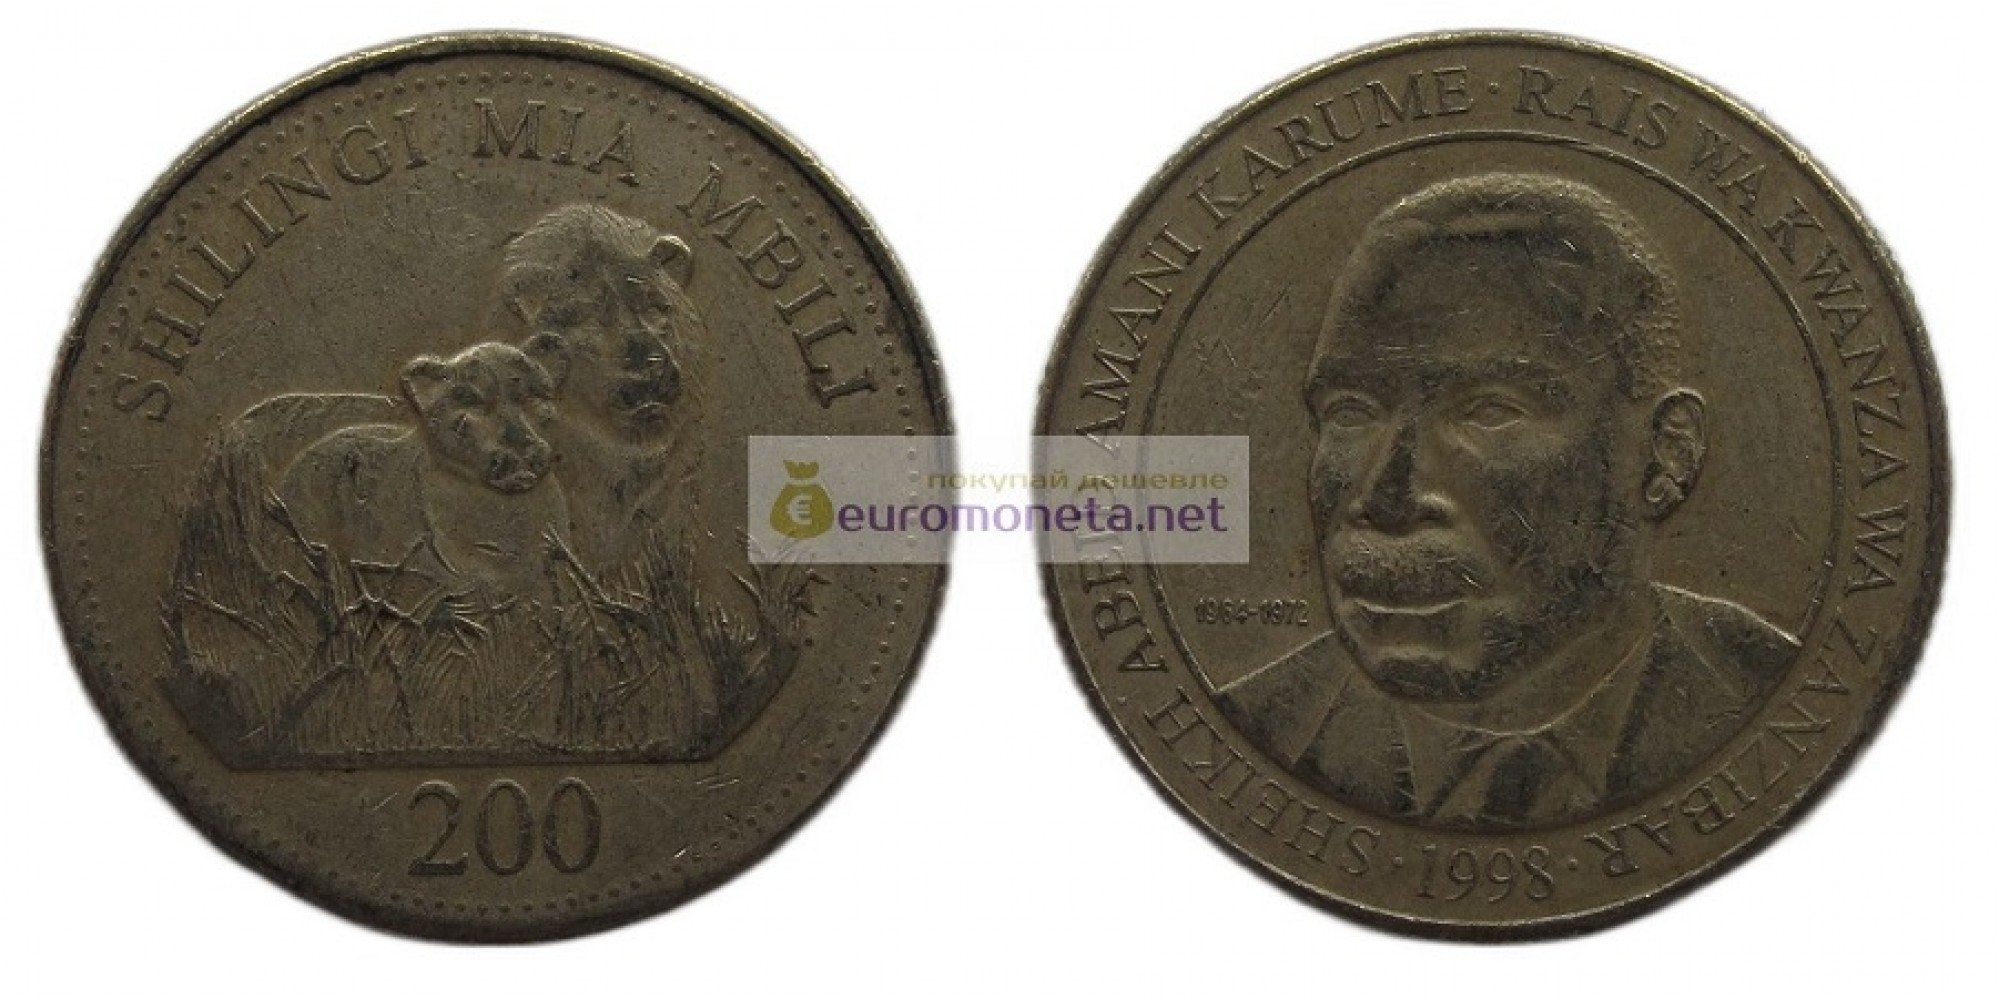 Объединённая Республика Танзания (Занзибар) 200 шиллингов 1998 год